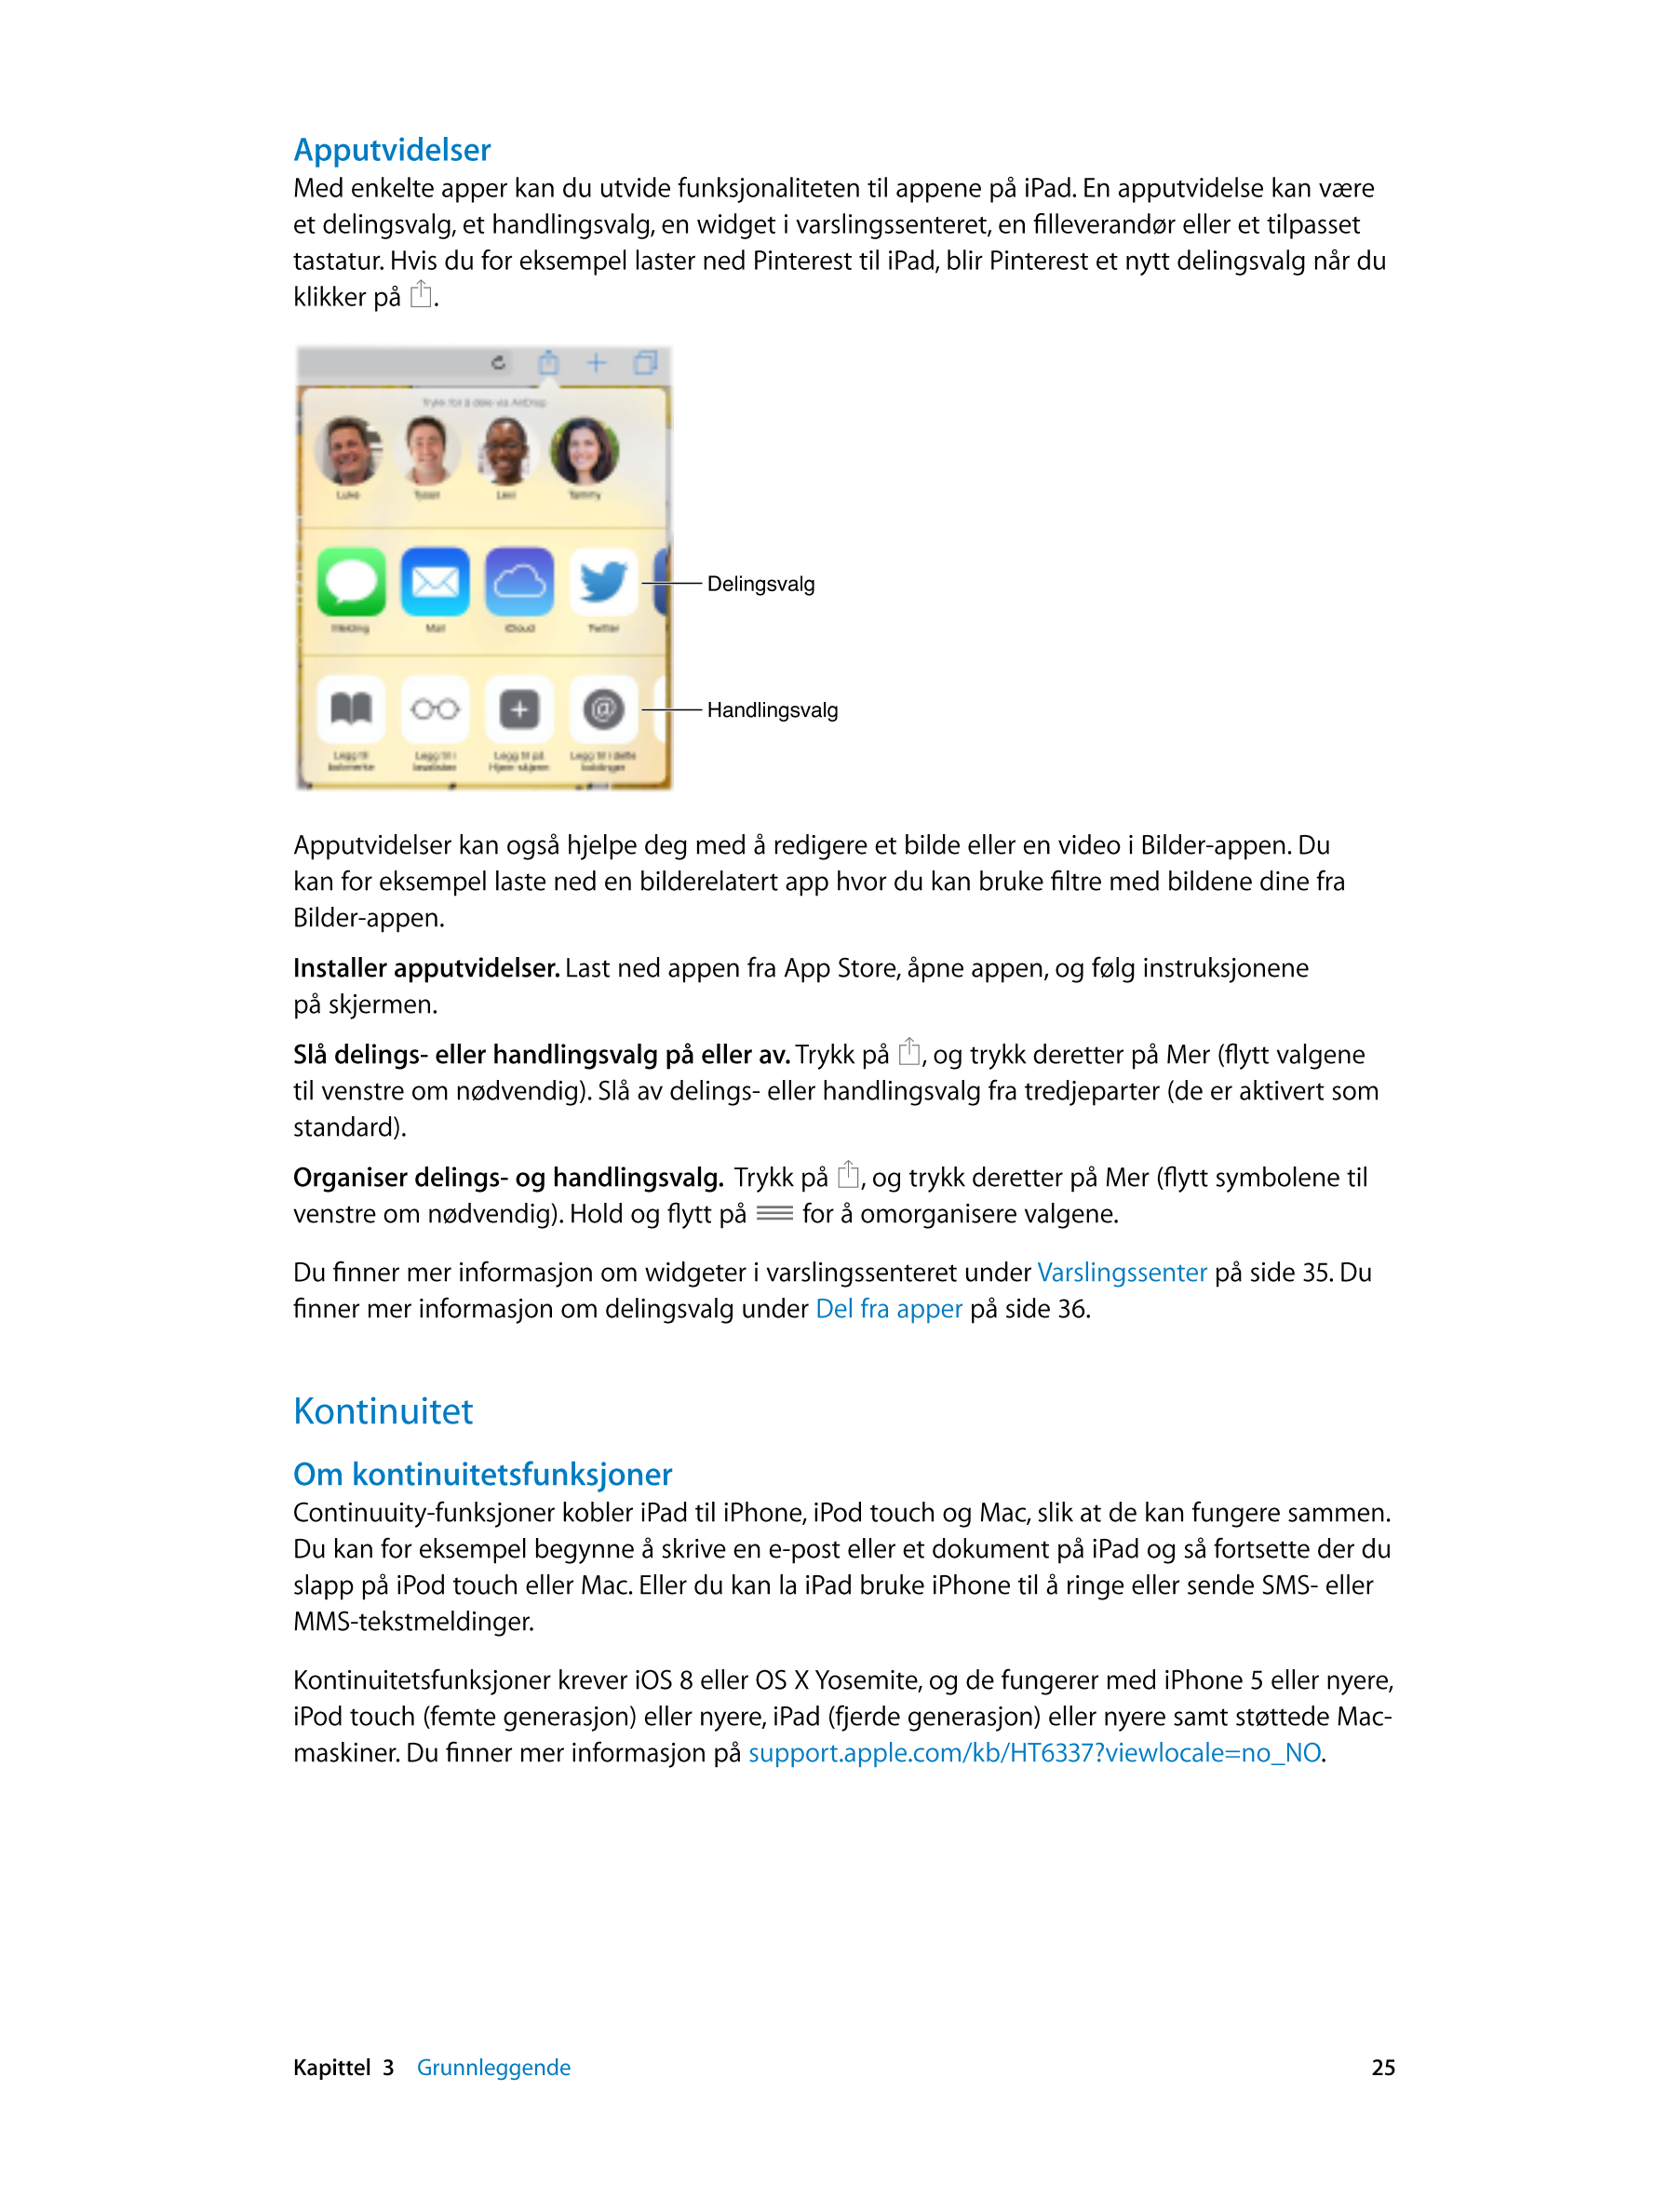 Apputvidelser
Med enkelte apper kan du utvide funksjonaliteten til appene på iPad. En apputvidelse kan være 
et delingsvalg, et 